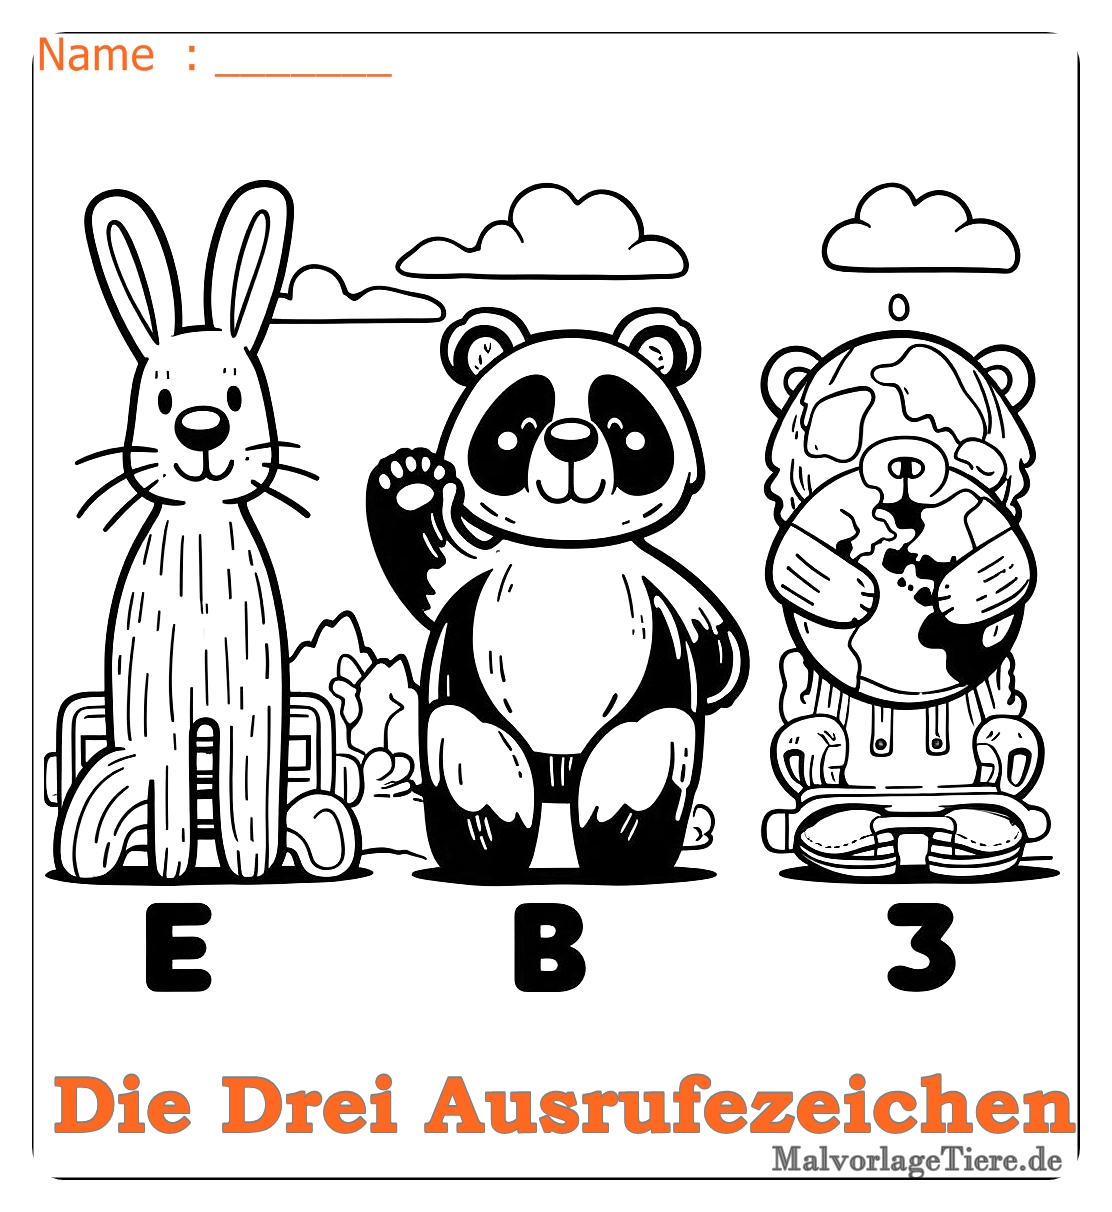 die drei ausrufezeichen ausmalbild 05 by malvorlagetiere.de